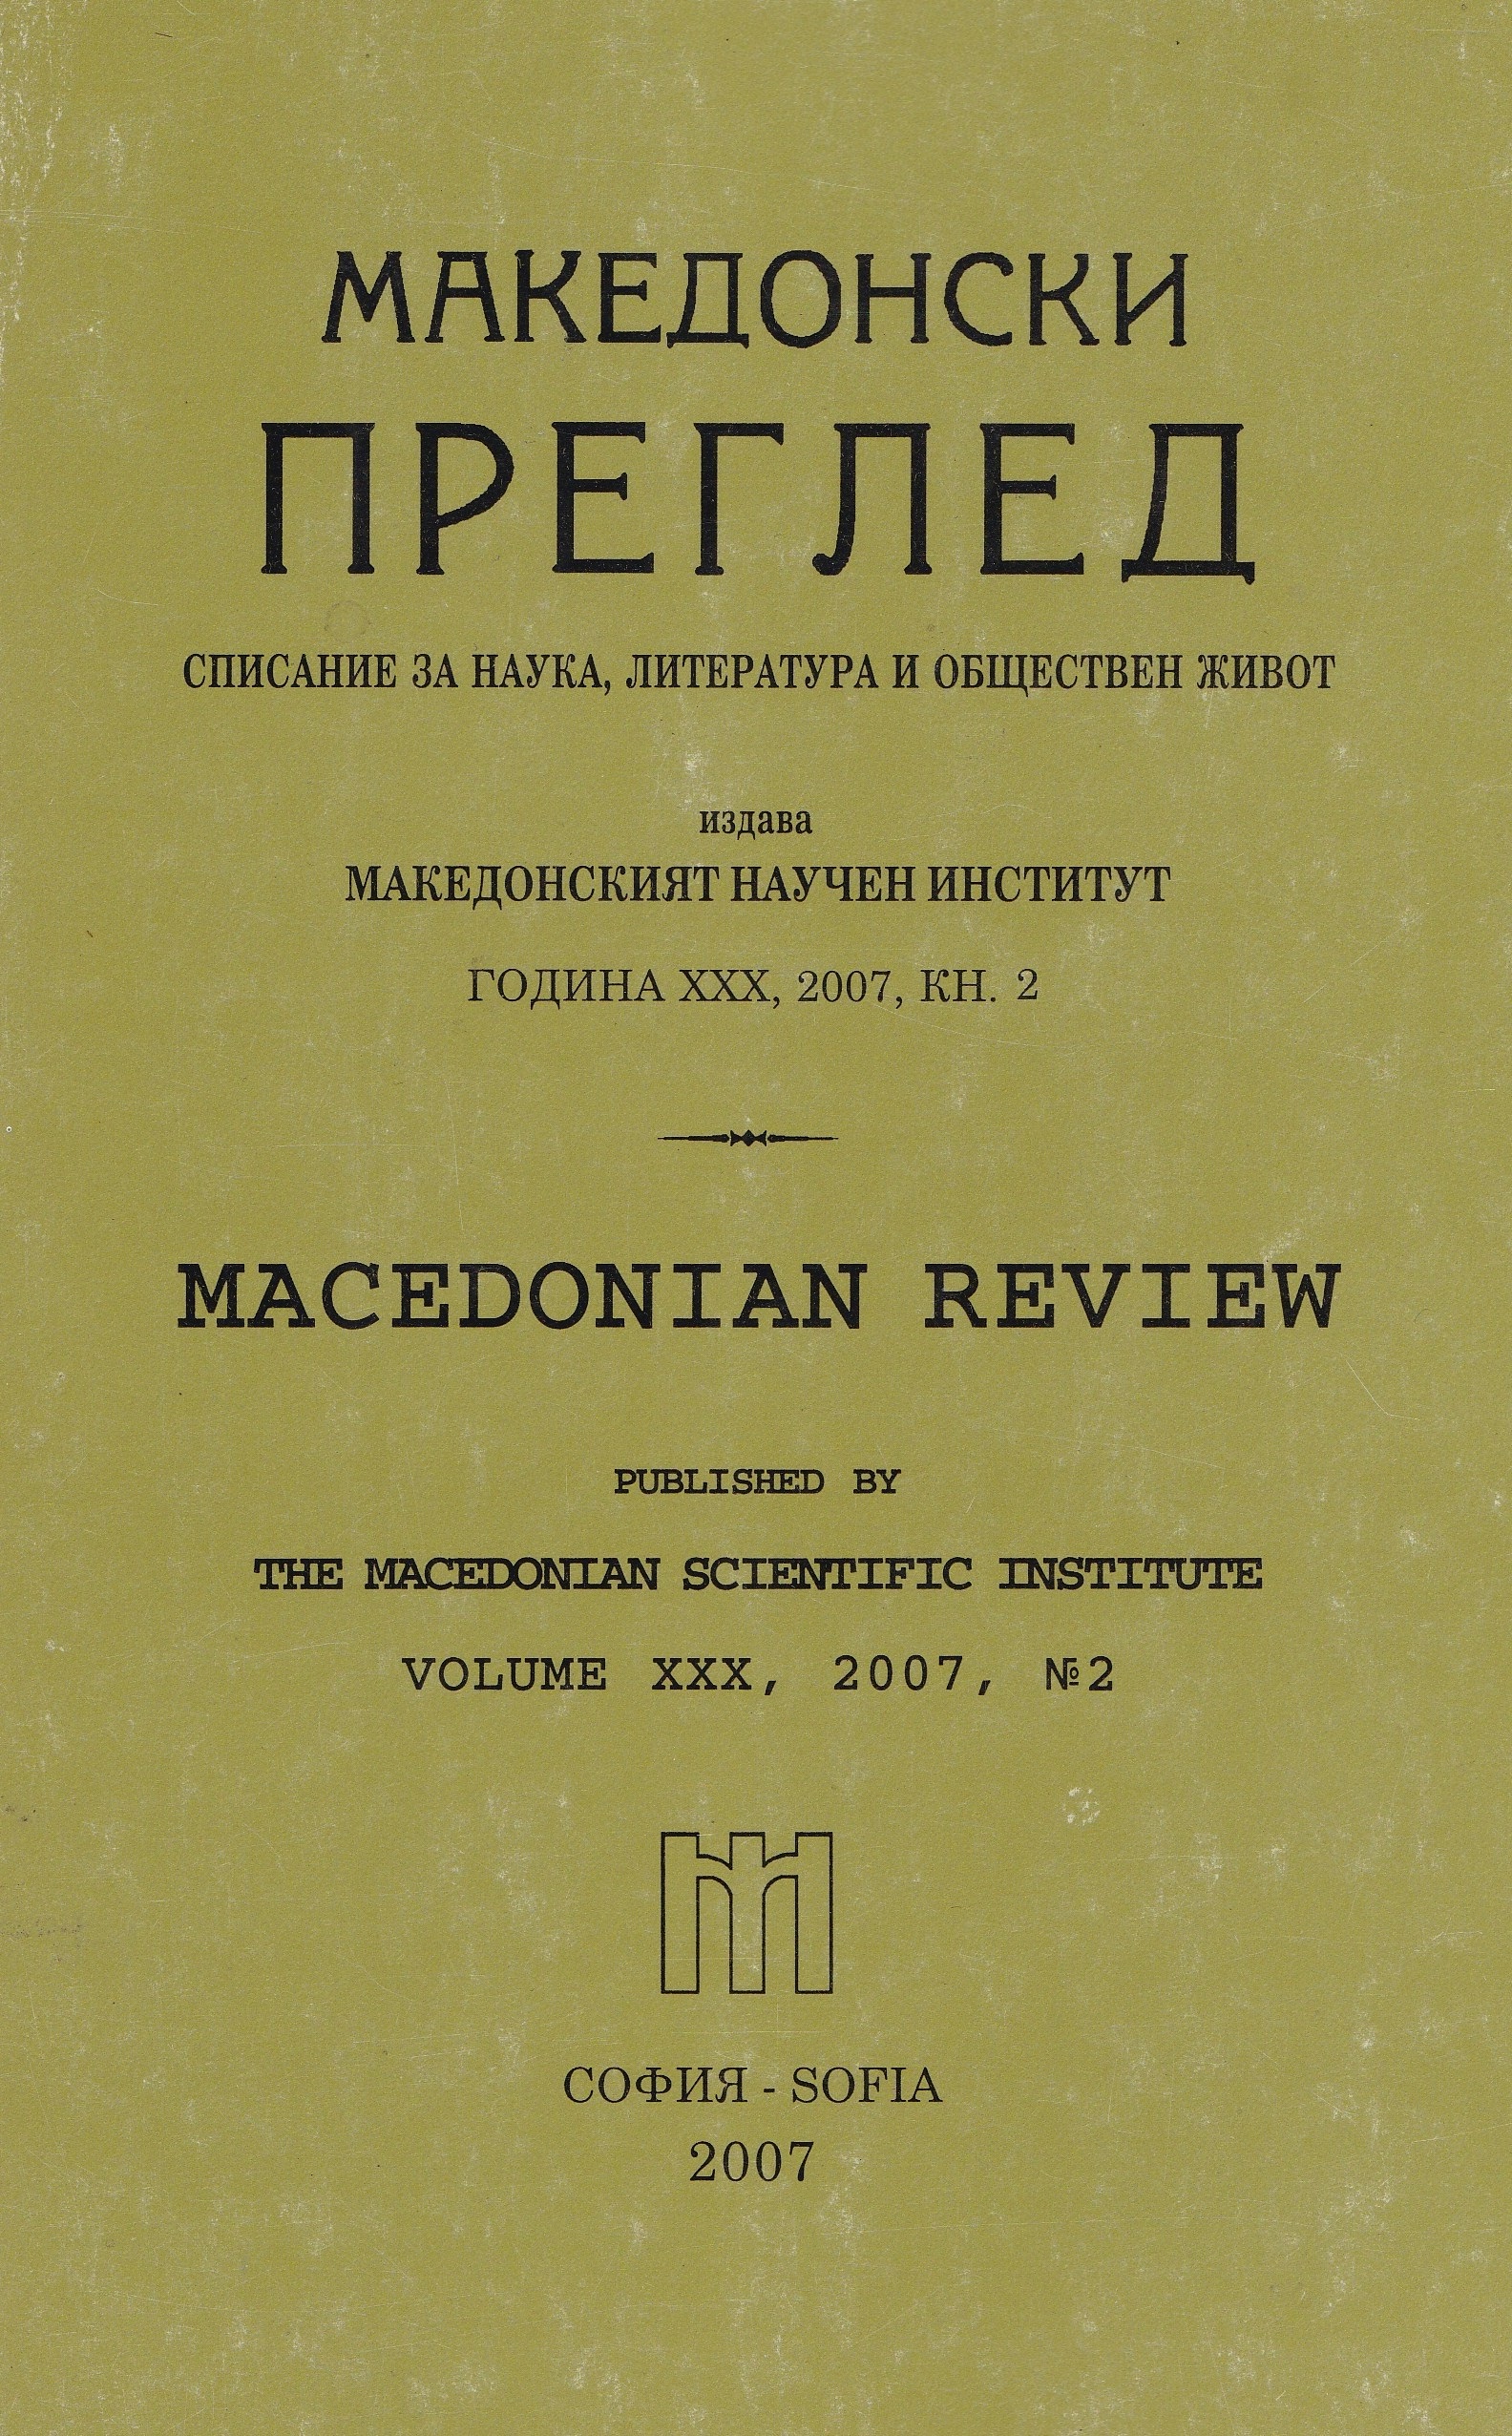 Трибуна на македонските българи в Новия свят (80 години от създаването на в. „Македонска трибуна